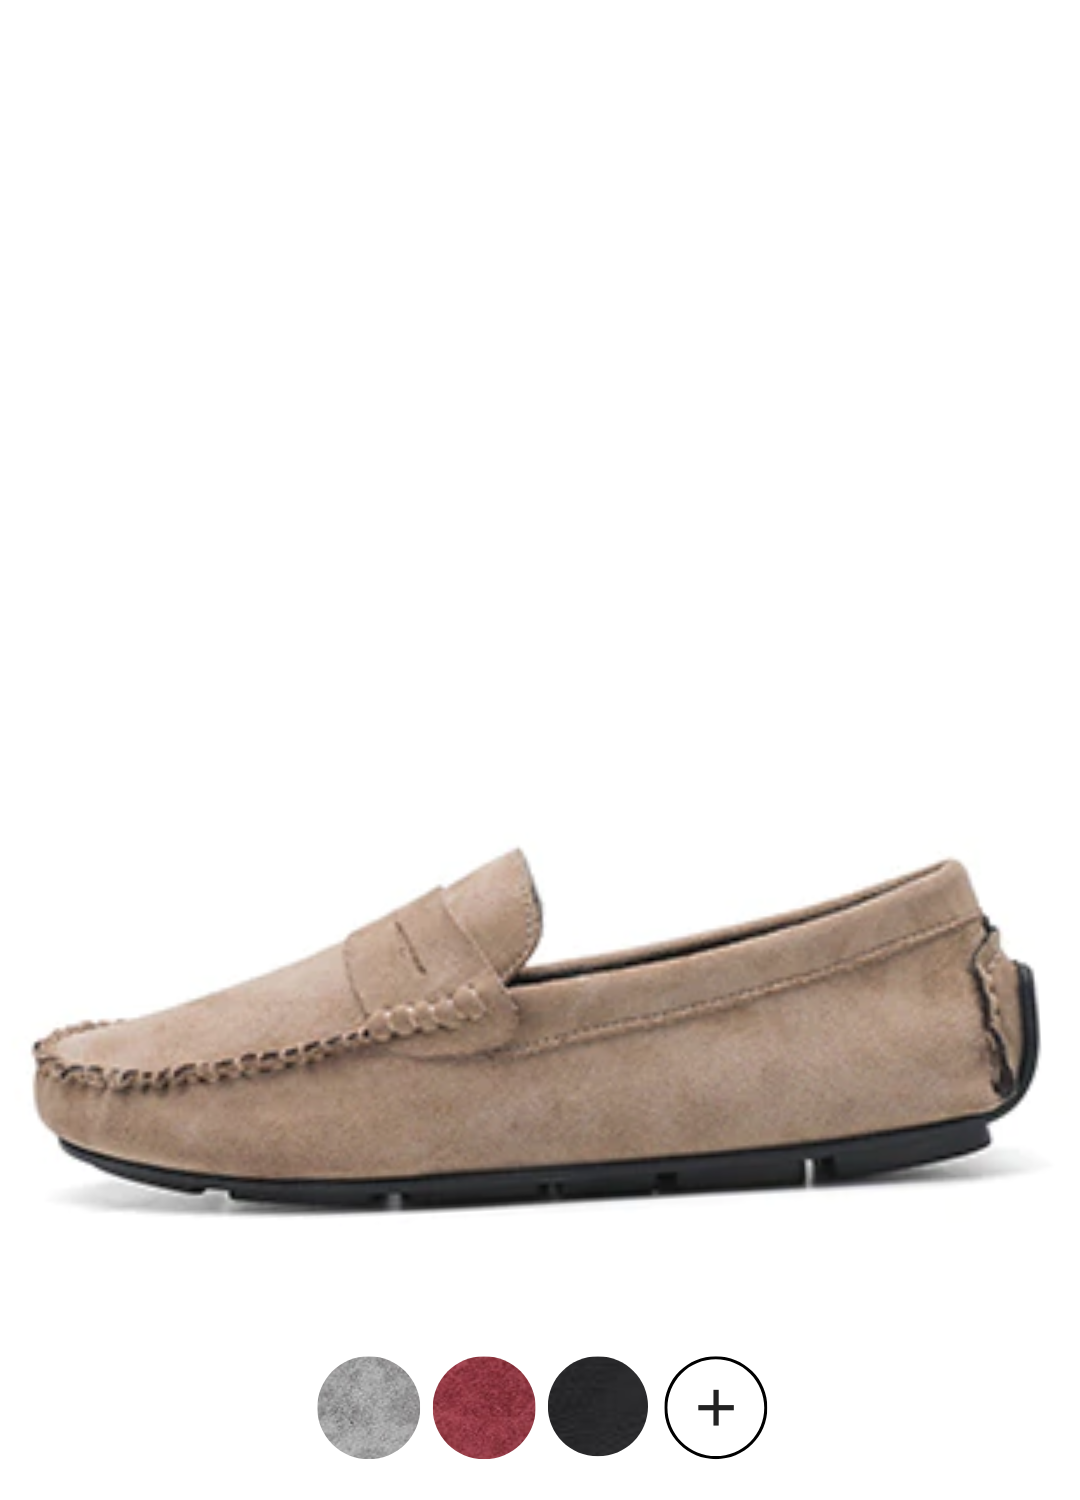 Blas Men's Loafer Shoes | Ultrasellershoes.com – Ultra Seller Shoes